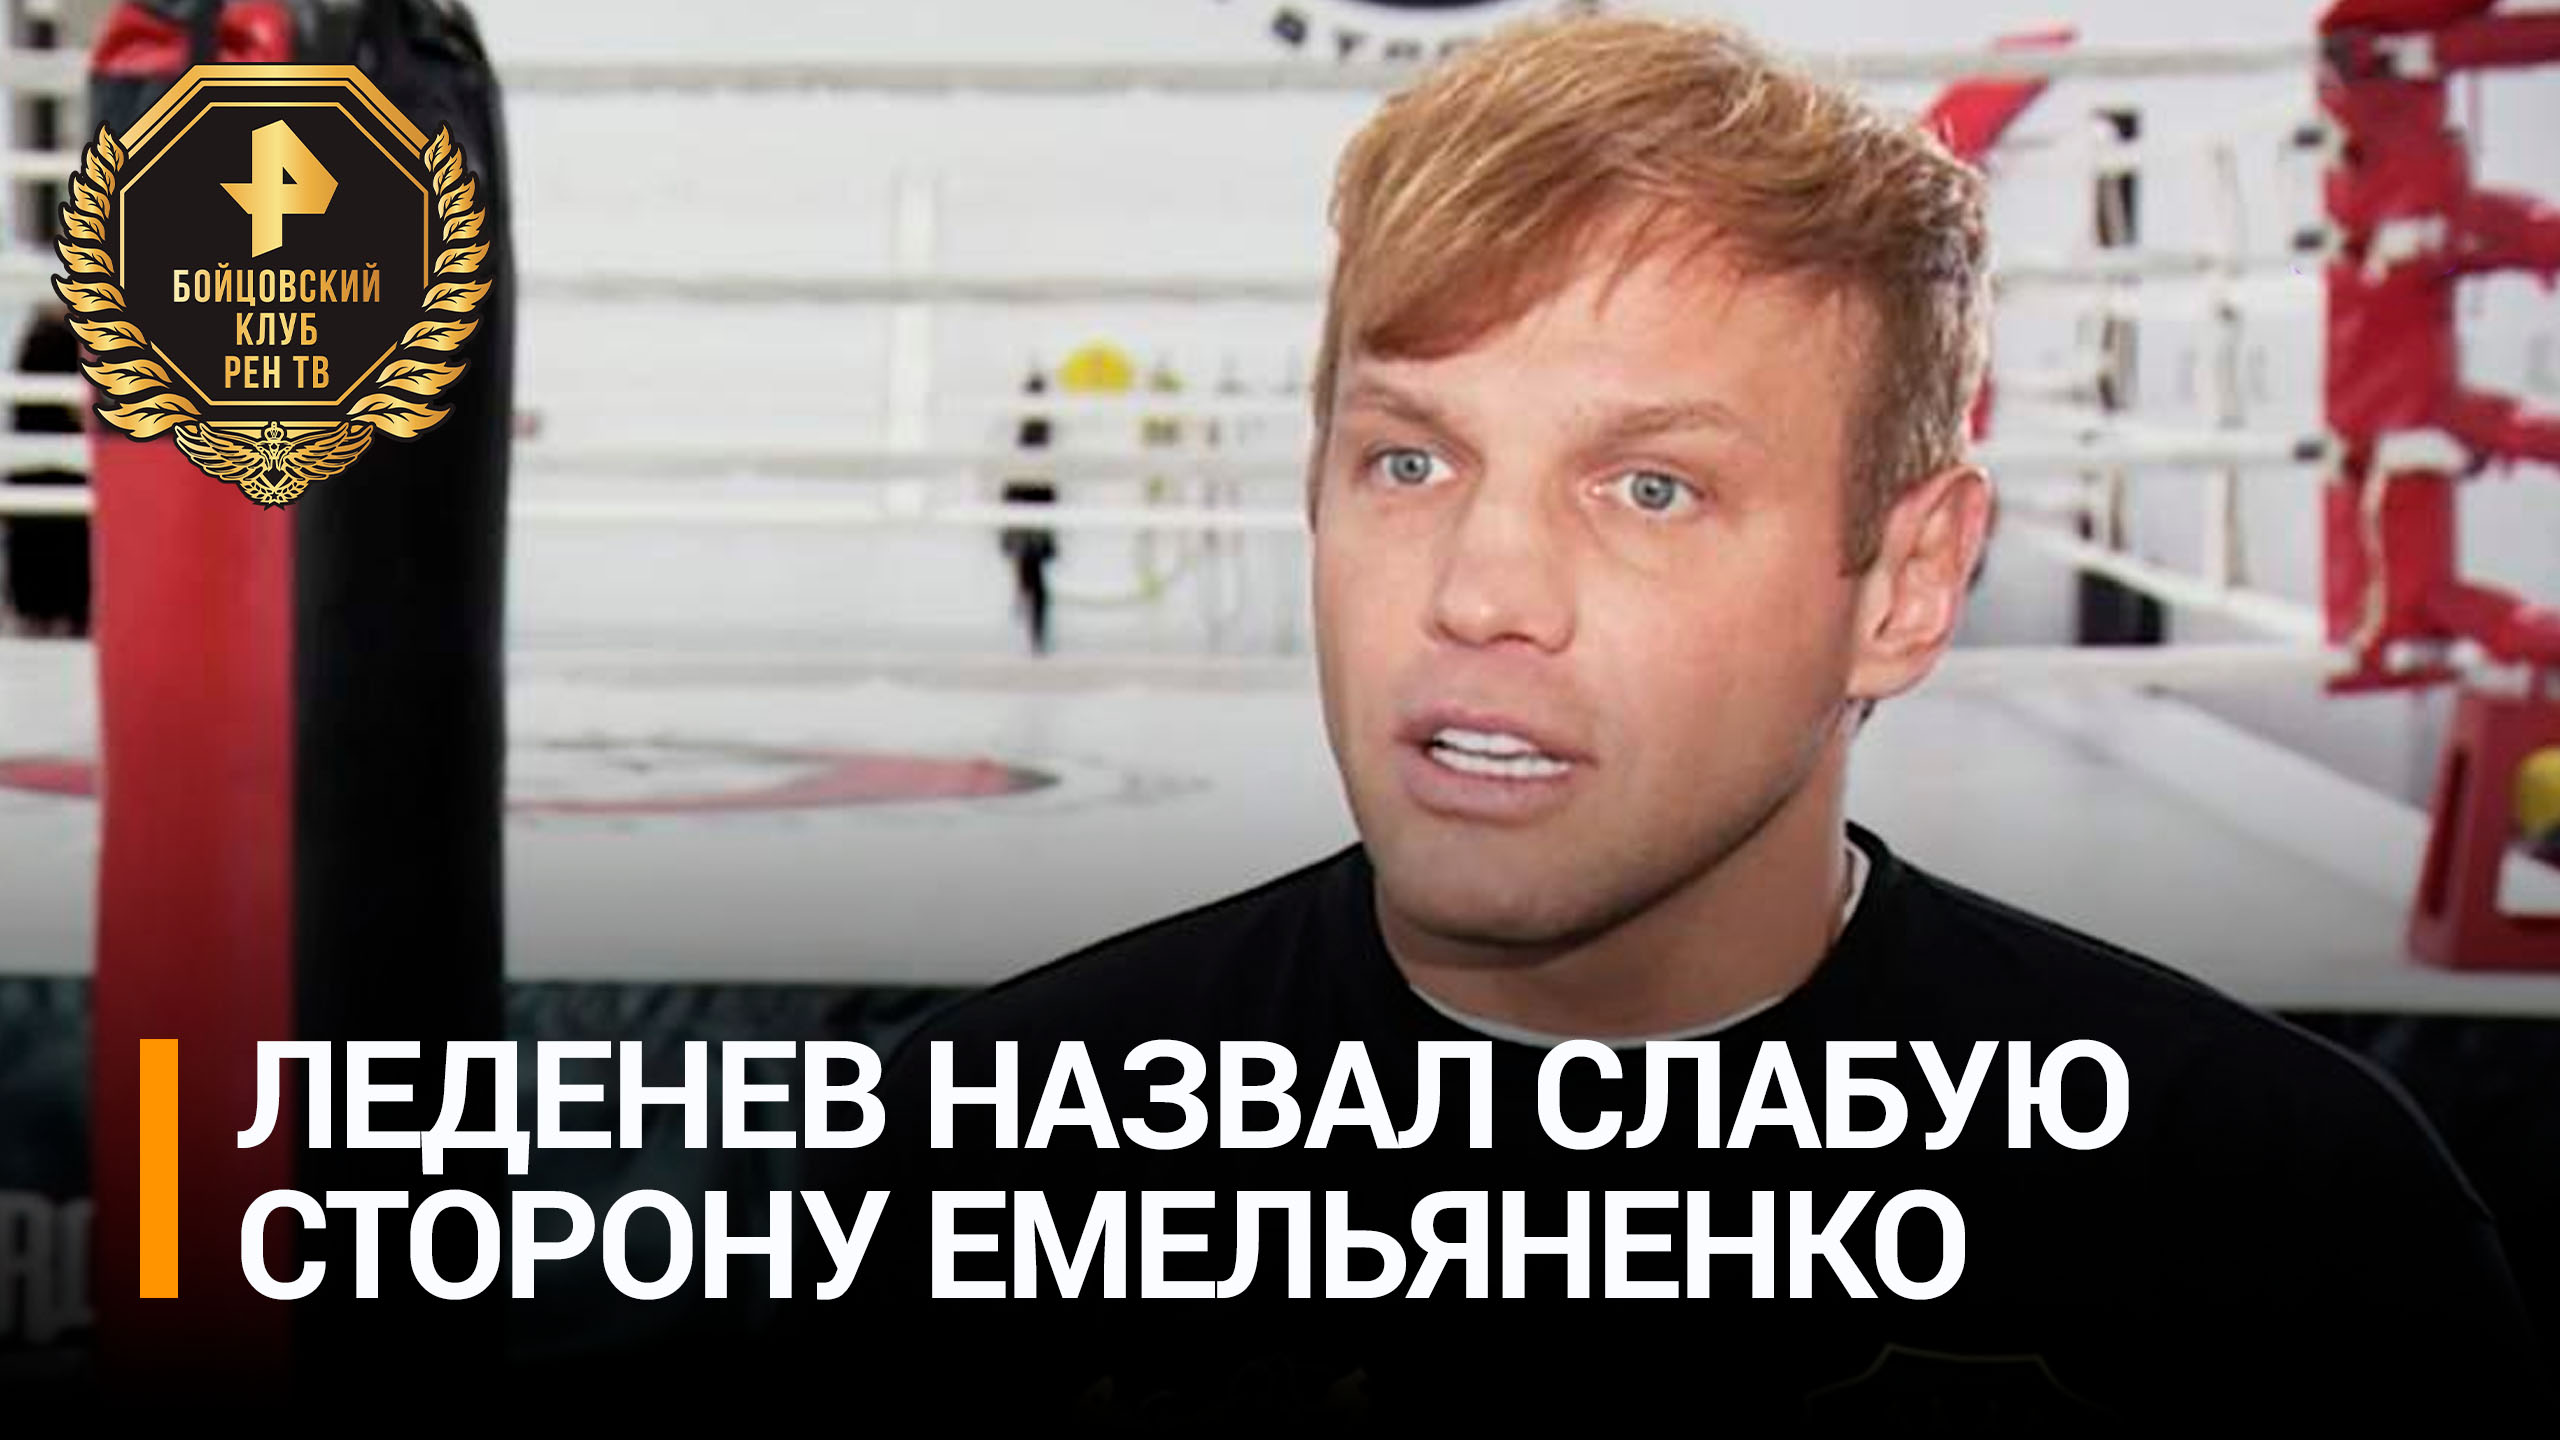 Самбист Леденев назвал ключевой фактор в бою Емельяненко и Ершова / Бойцовский клуб РЕН